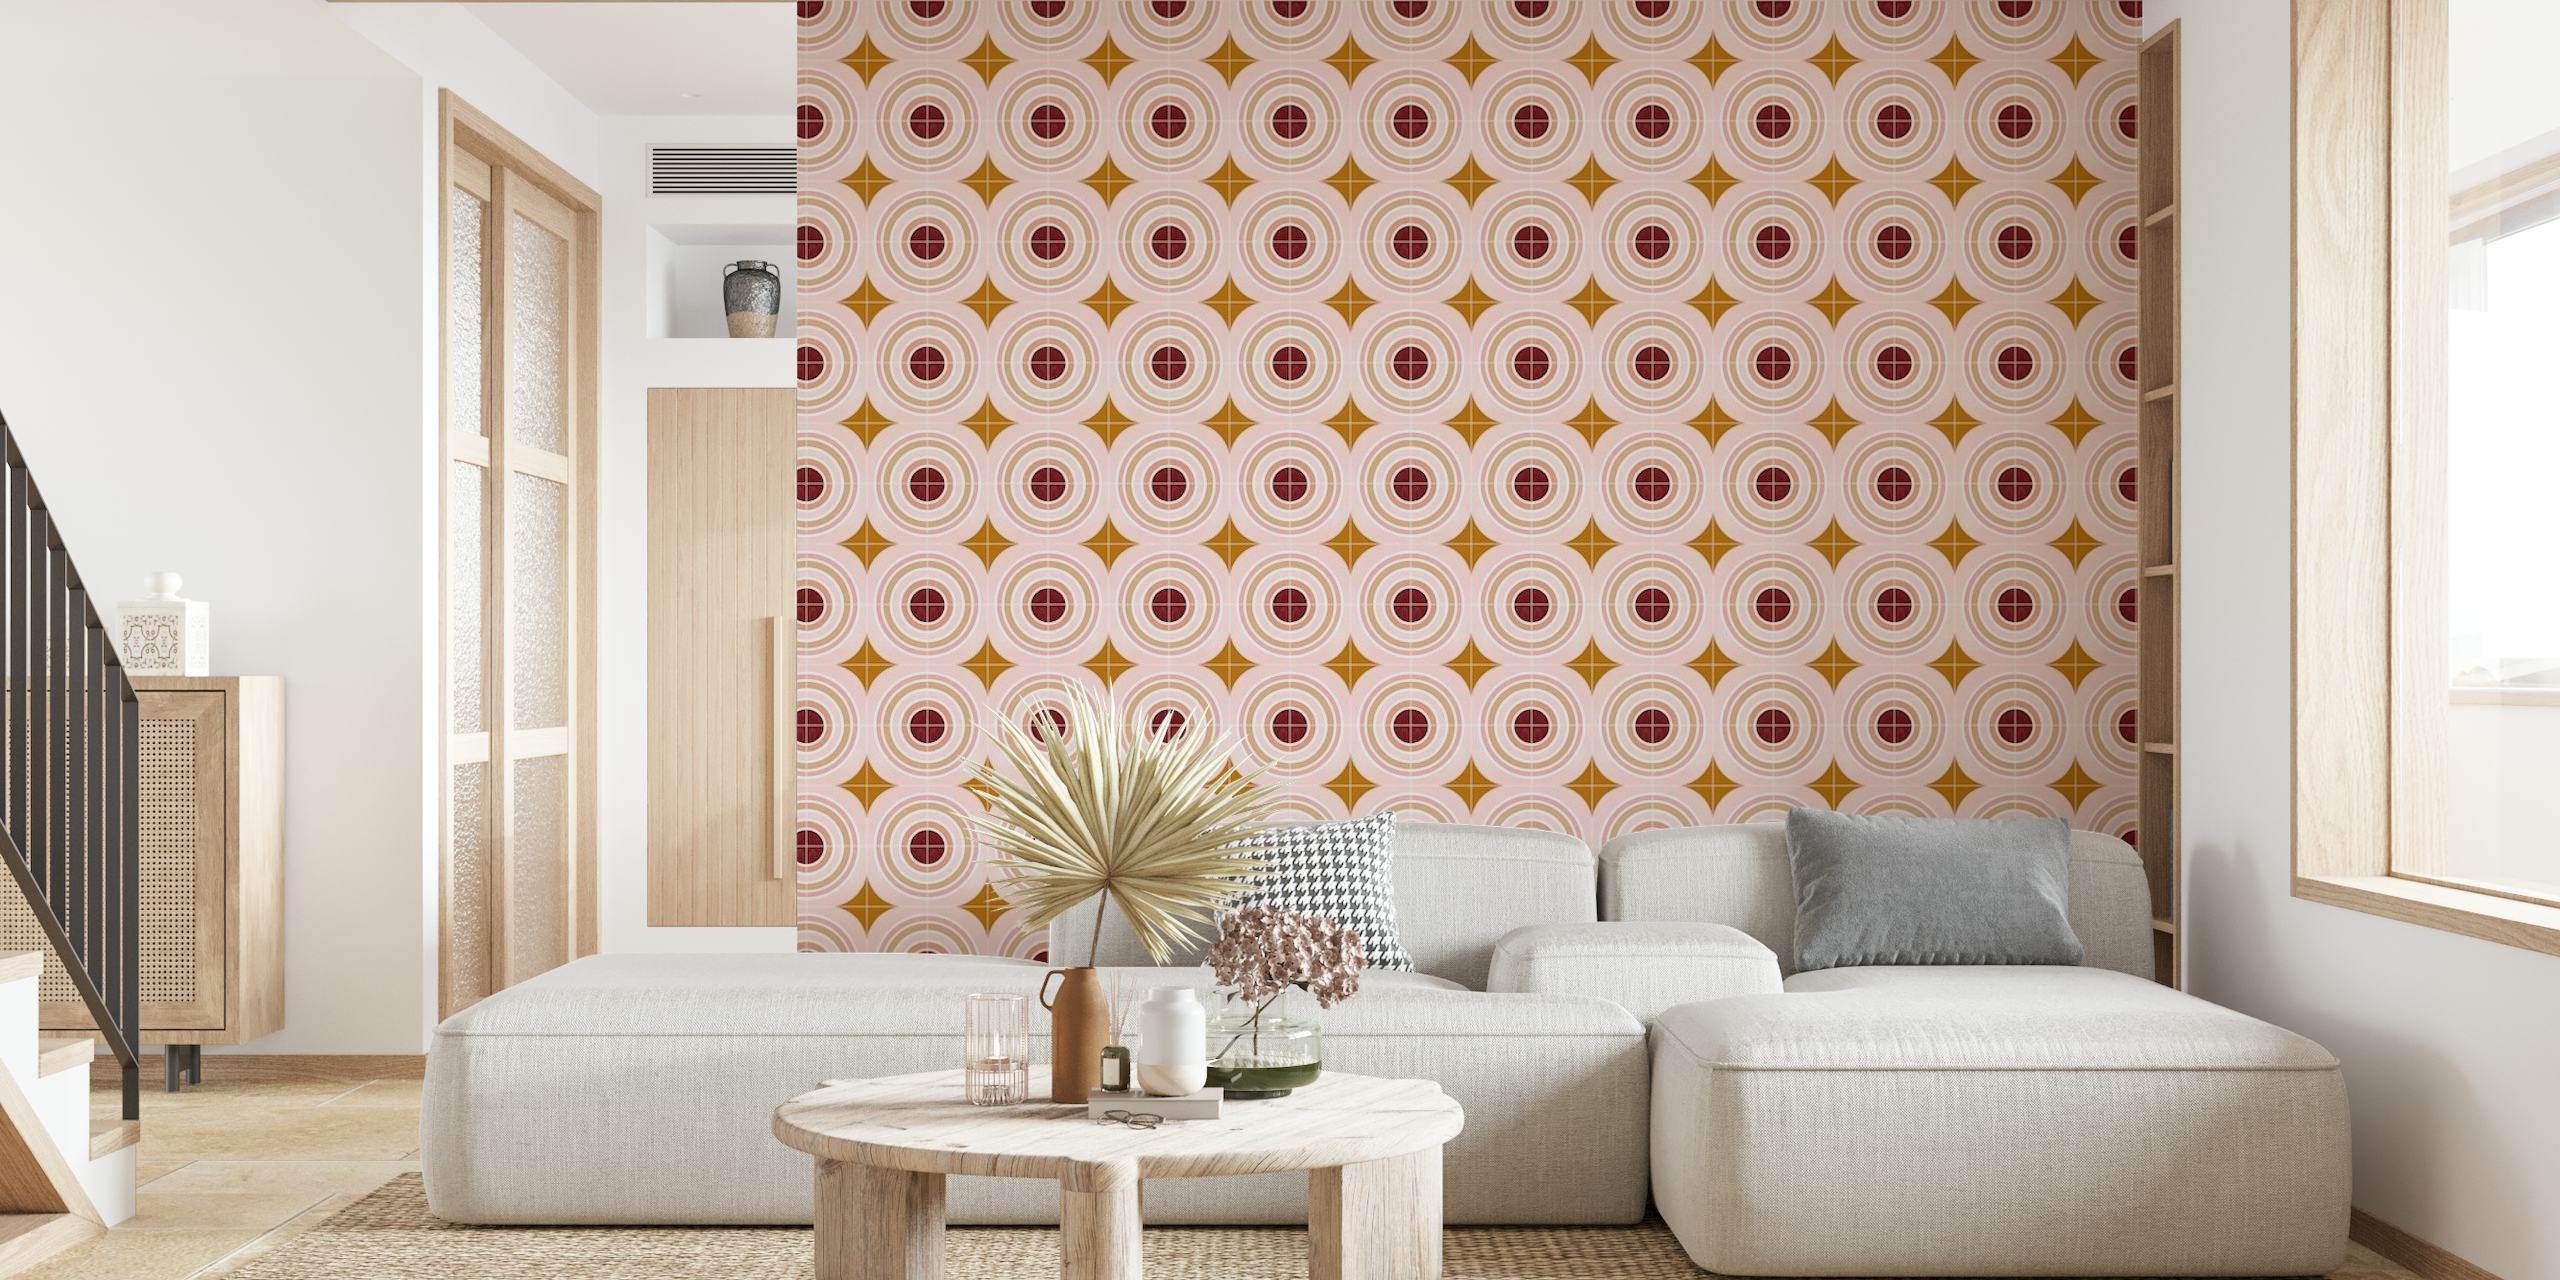 Fototapeta Target Tiles se vzory soustředných kruhů v jemných růžových a zlatých odstínech